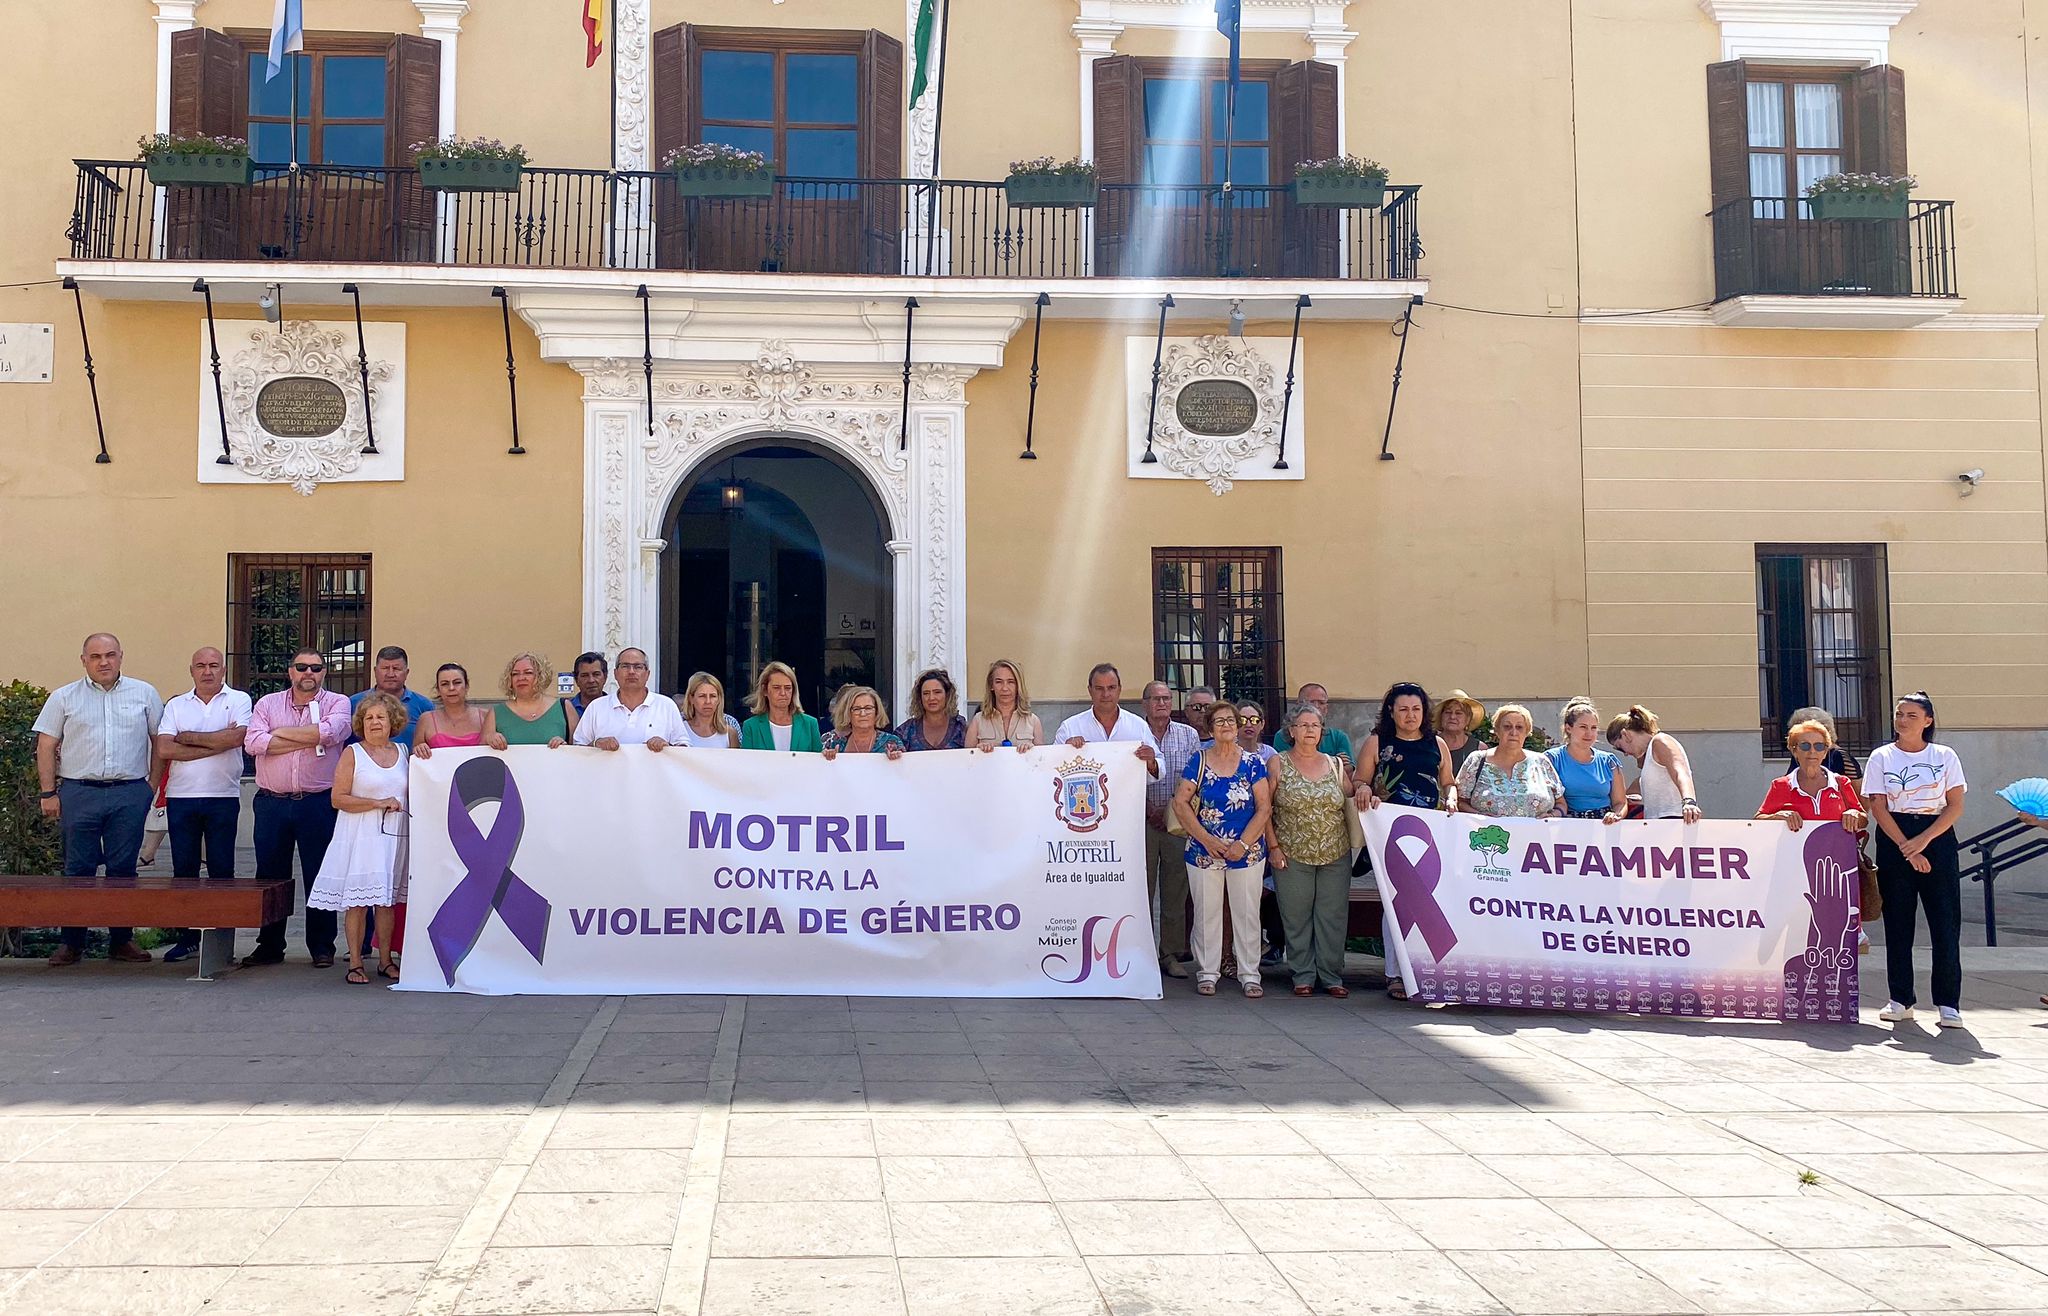 La provincia de Granada guarda silencio para condenar el presunto caso de violencia machista en Albuñol
